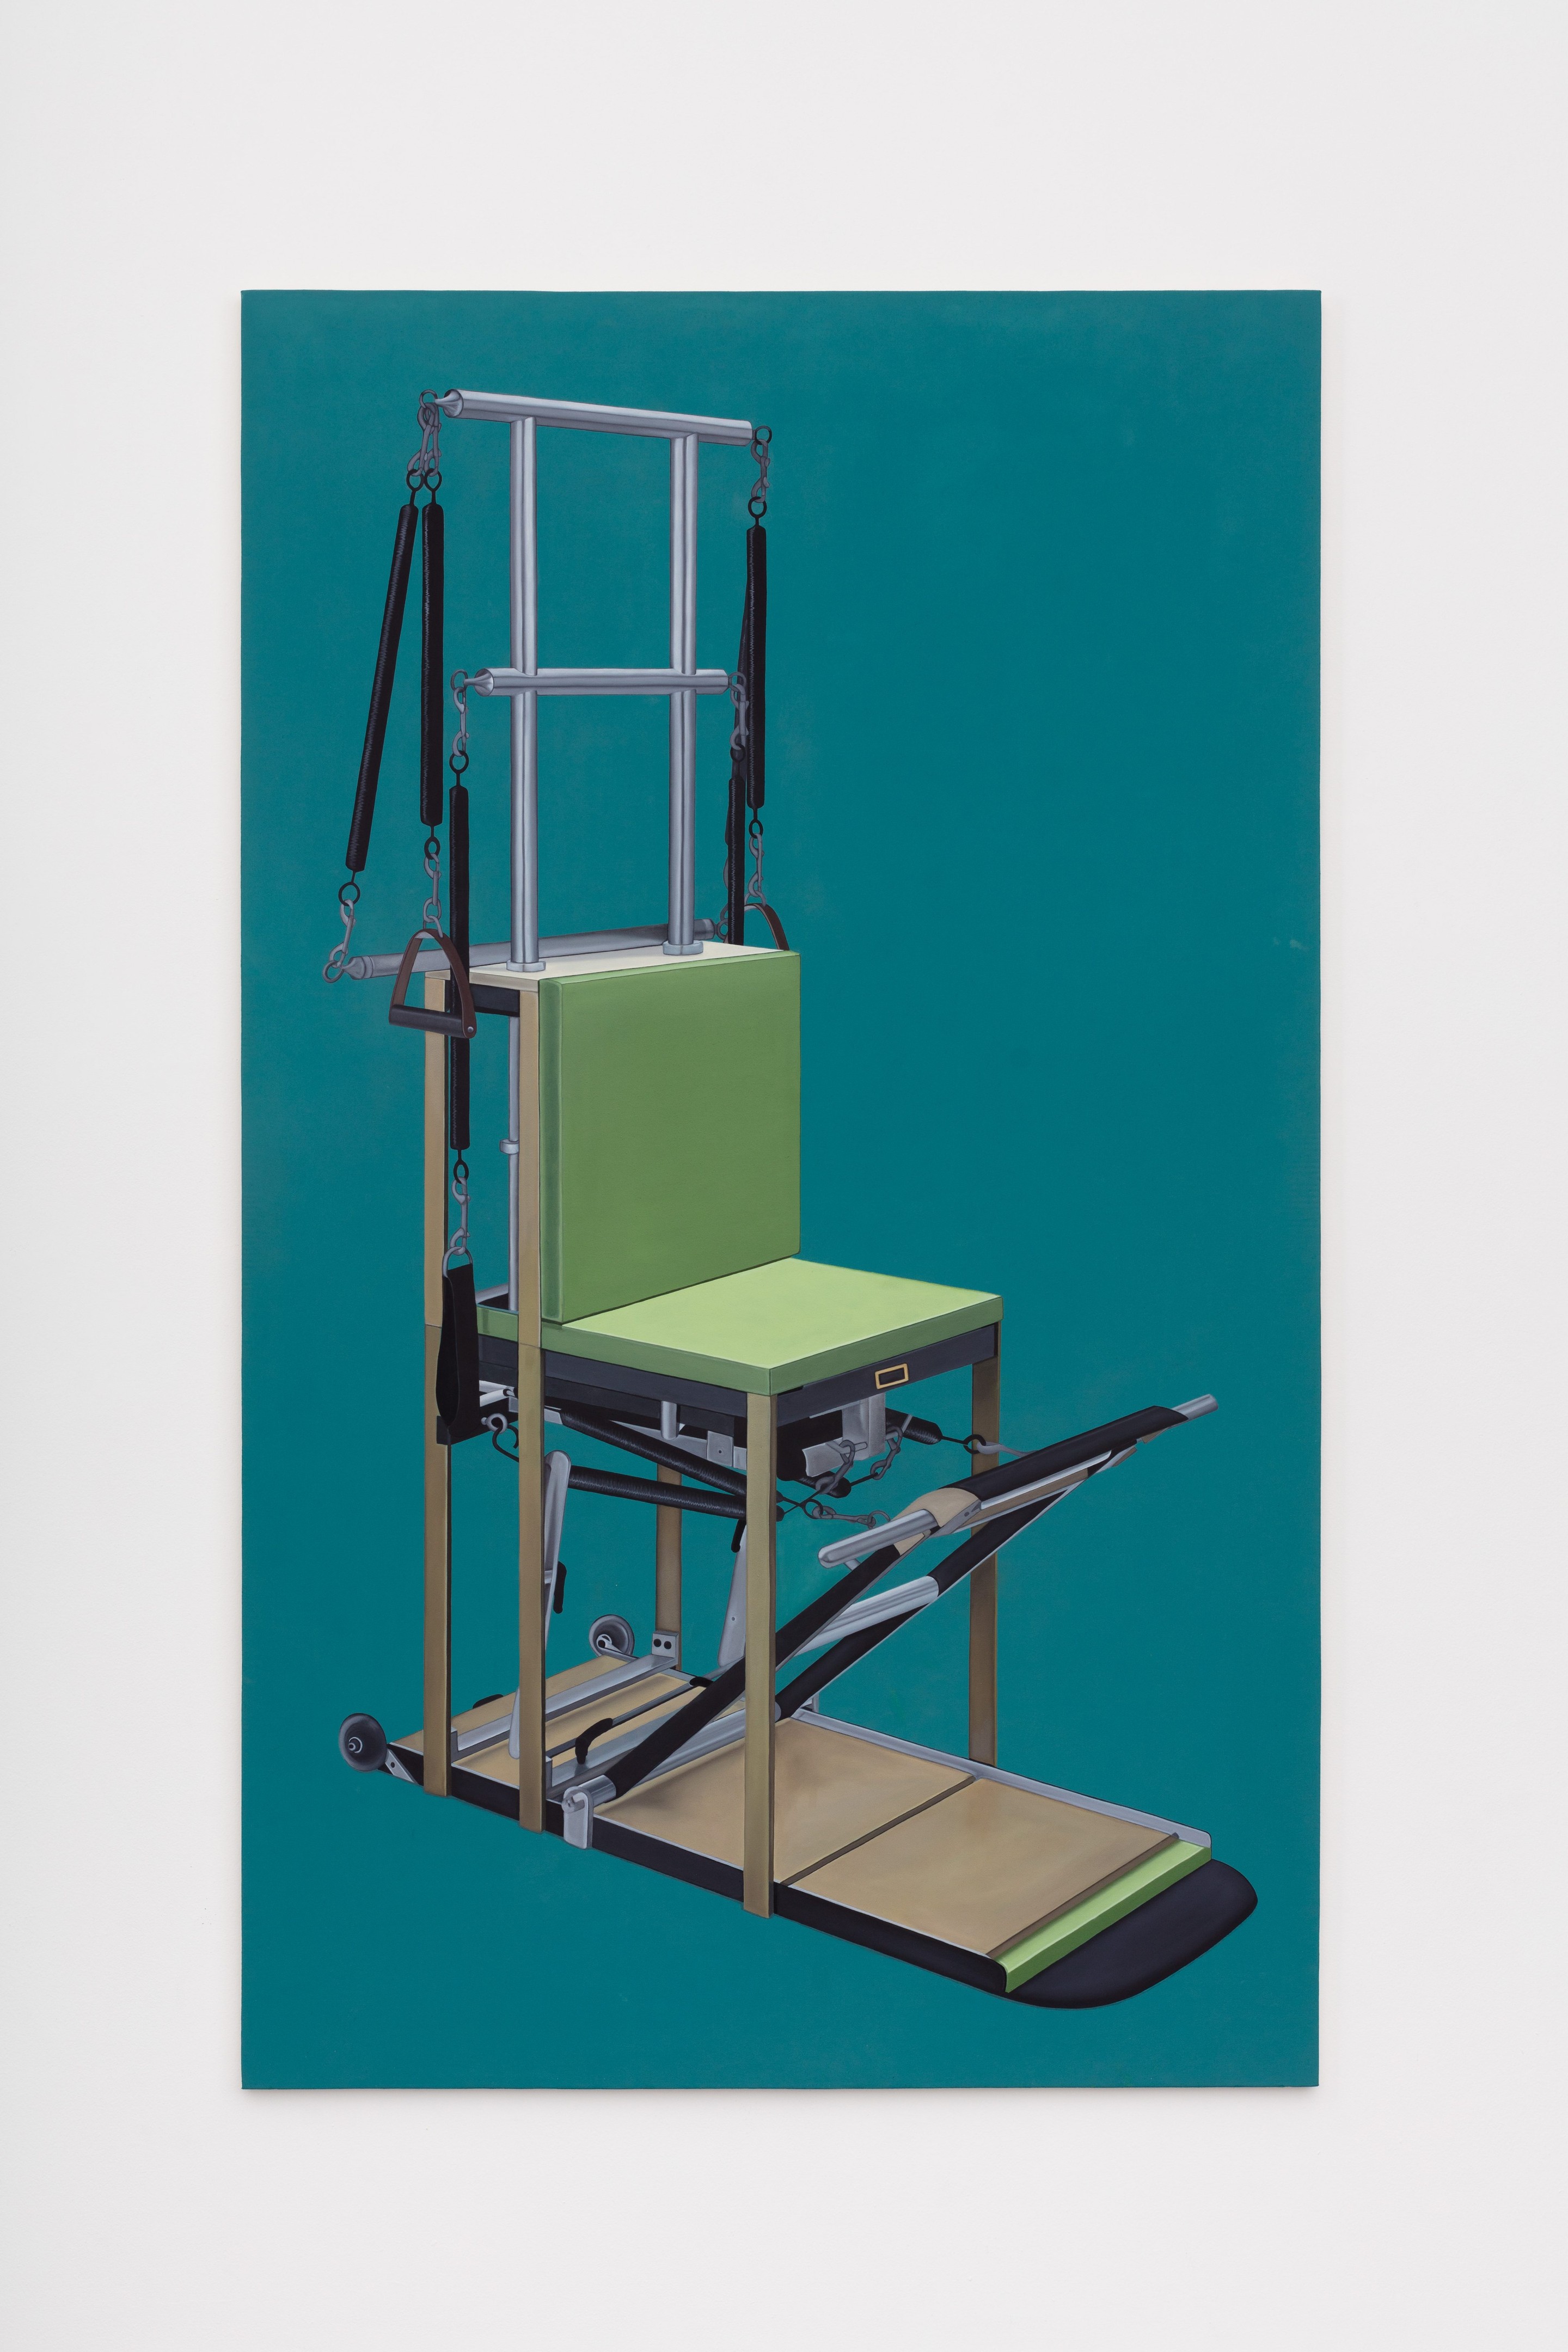 Electric Chair  (2021)

Oil on canvas on Styrofoam 

78.75h x 47.25w (200h x 120w cm)